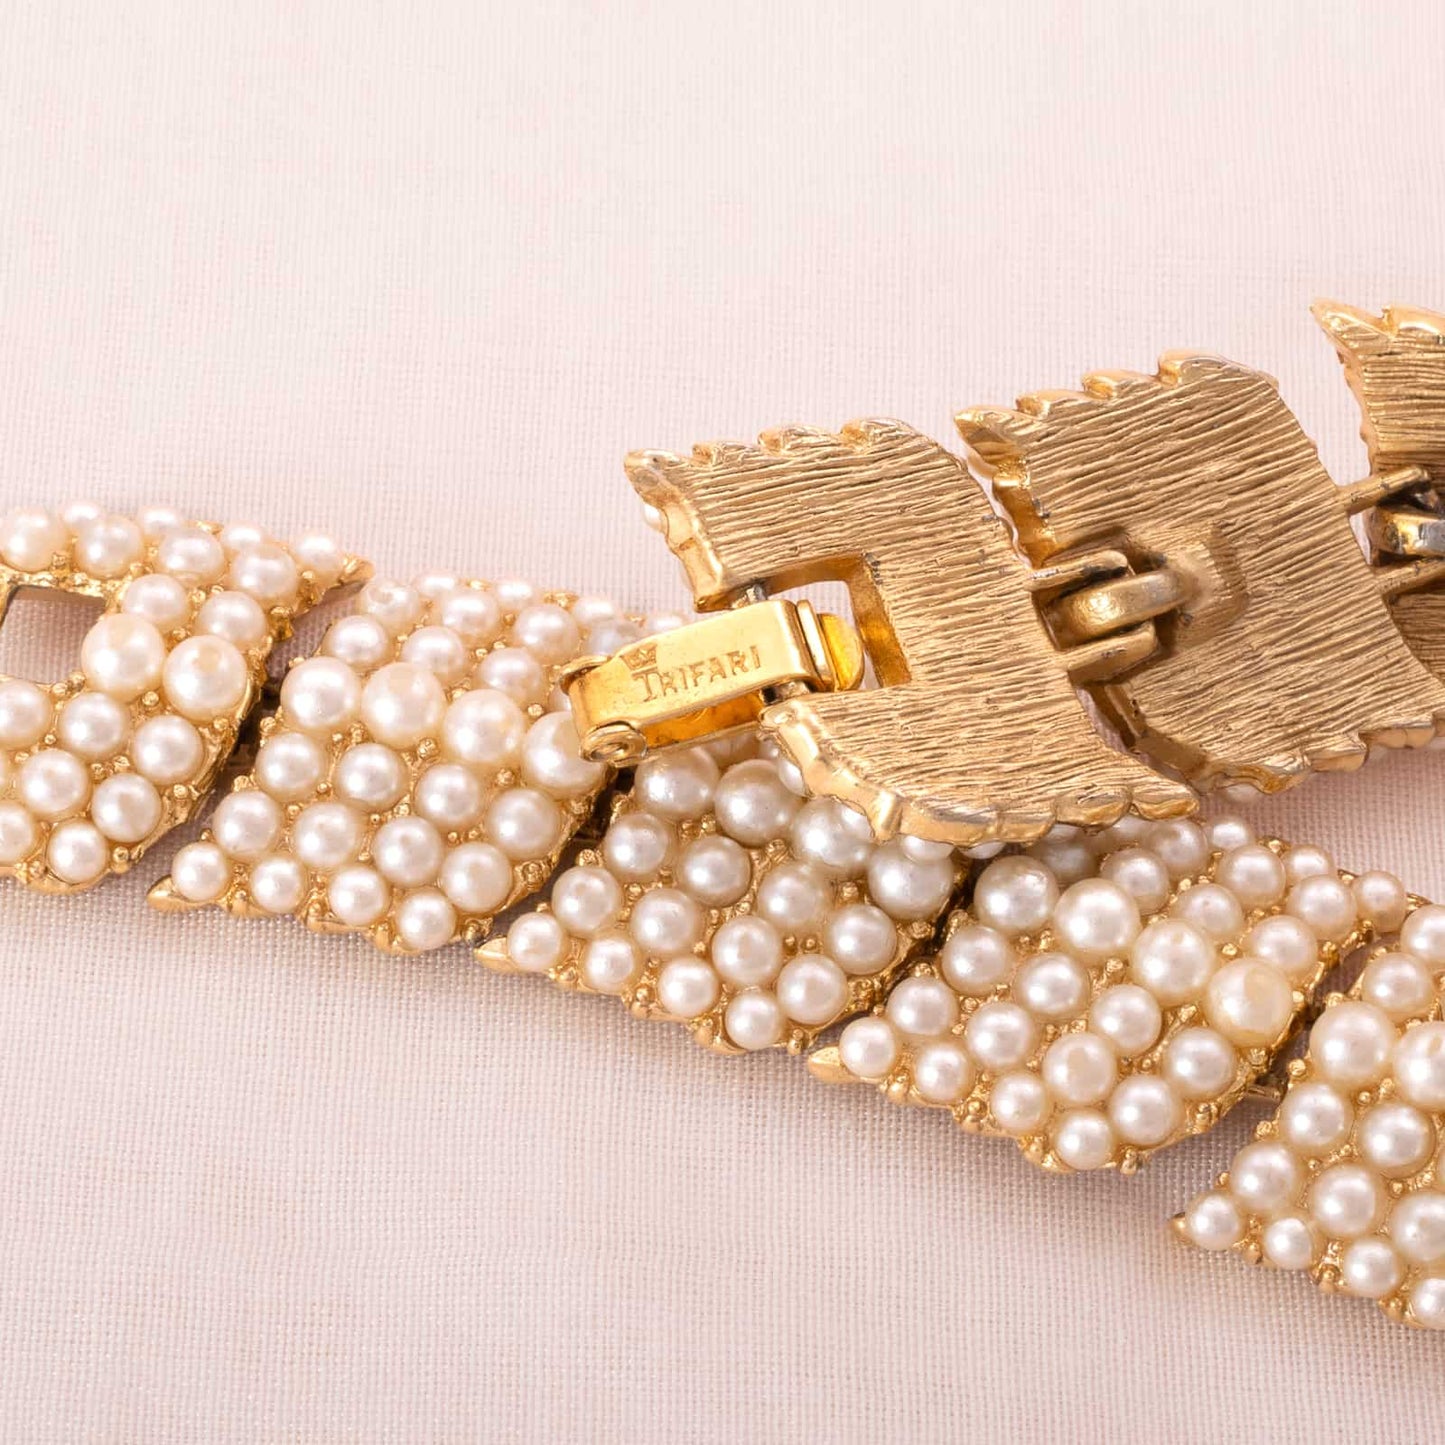 Trifari-Perlen-Armband-vergoldet-Signatur-Krone